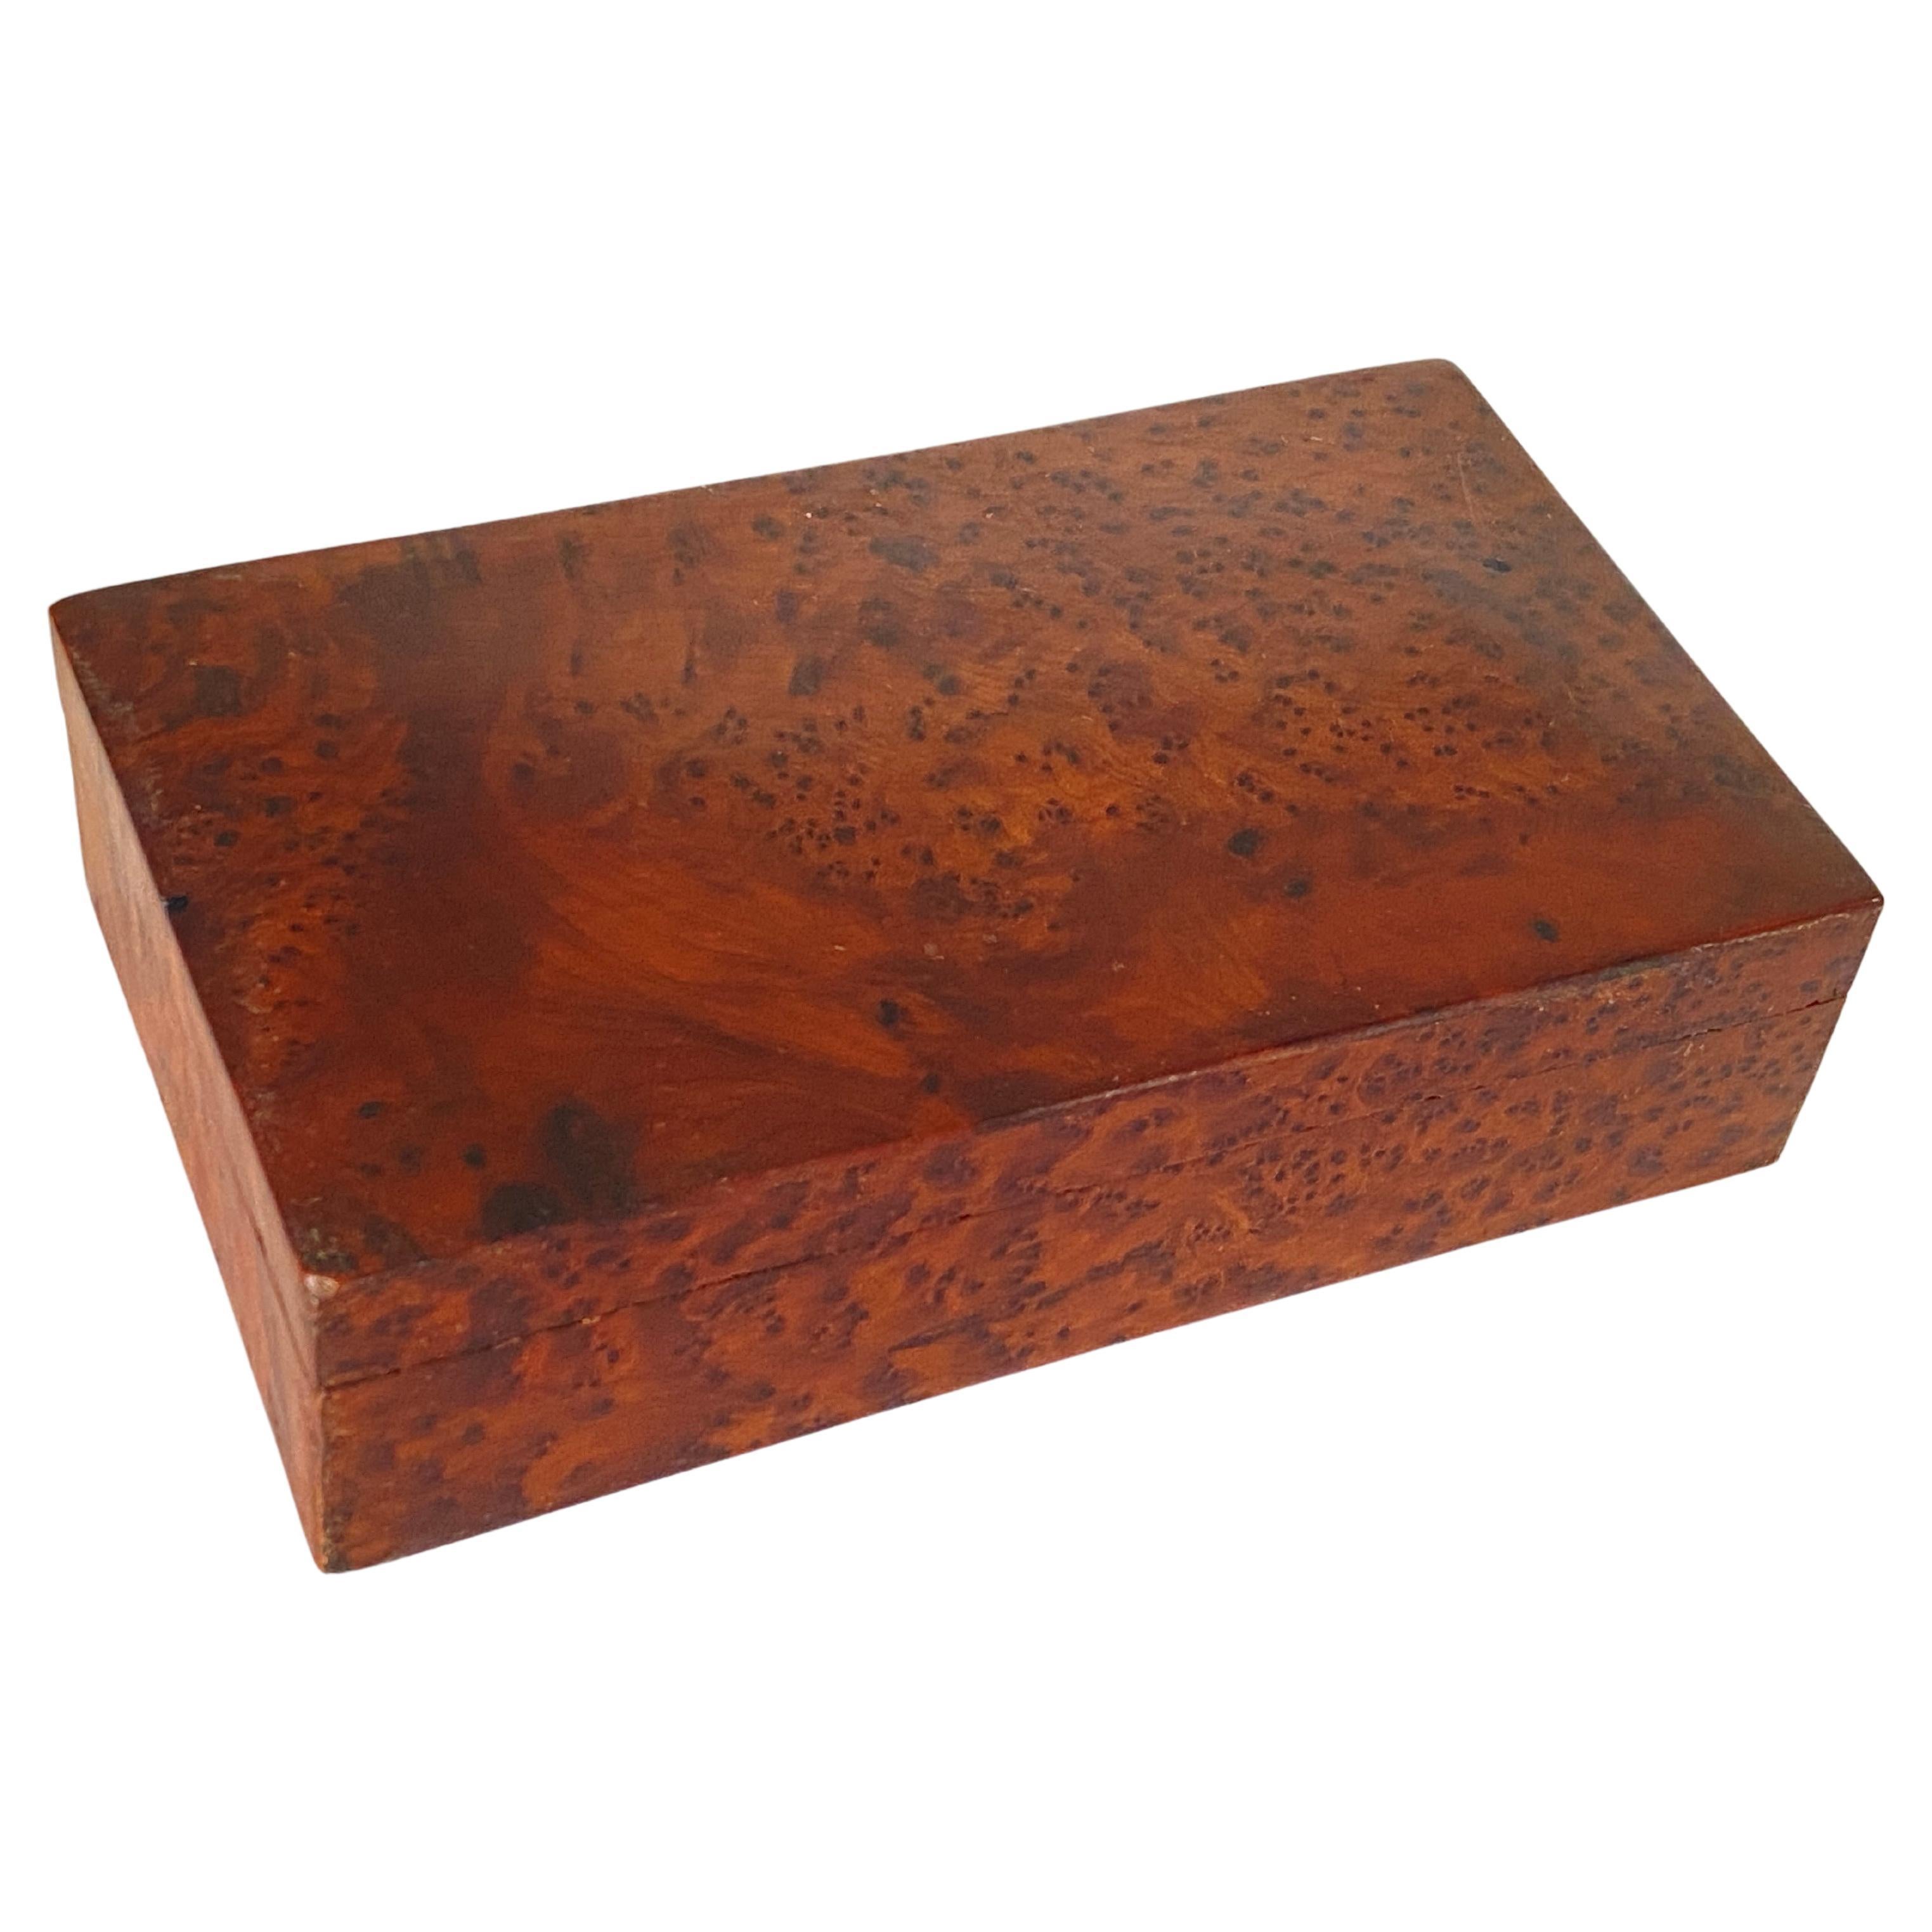 Zigarrenkisten oder dekorative Schachtel aus gemasertem Holz, braun, Frankreich, 20. Jahrhundert